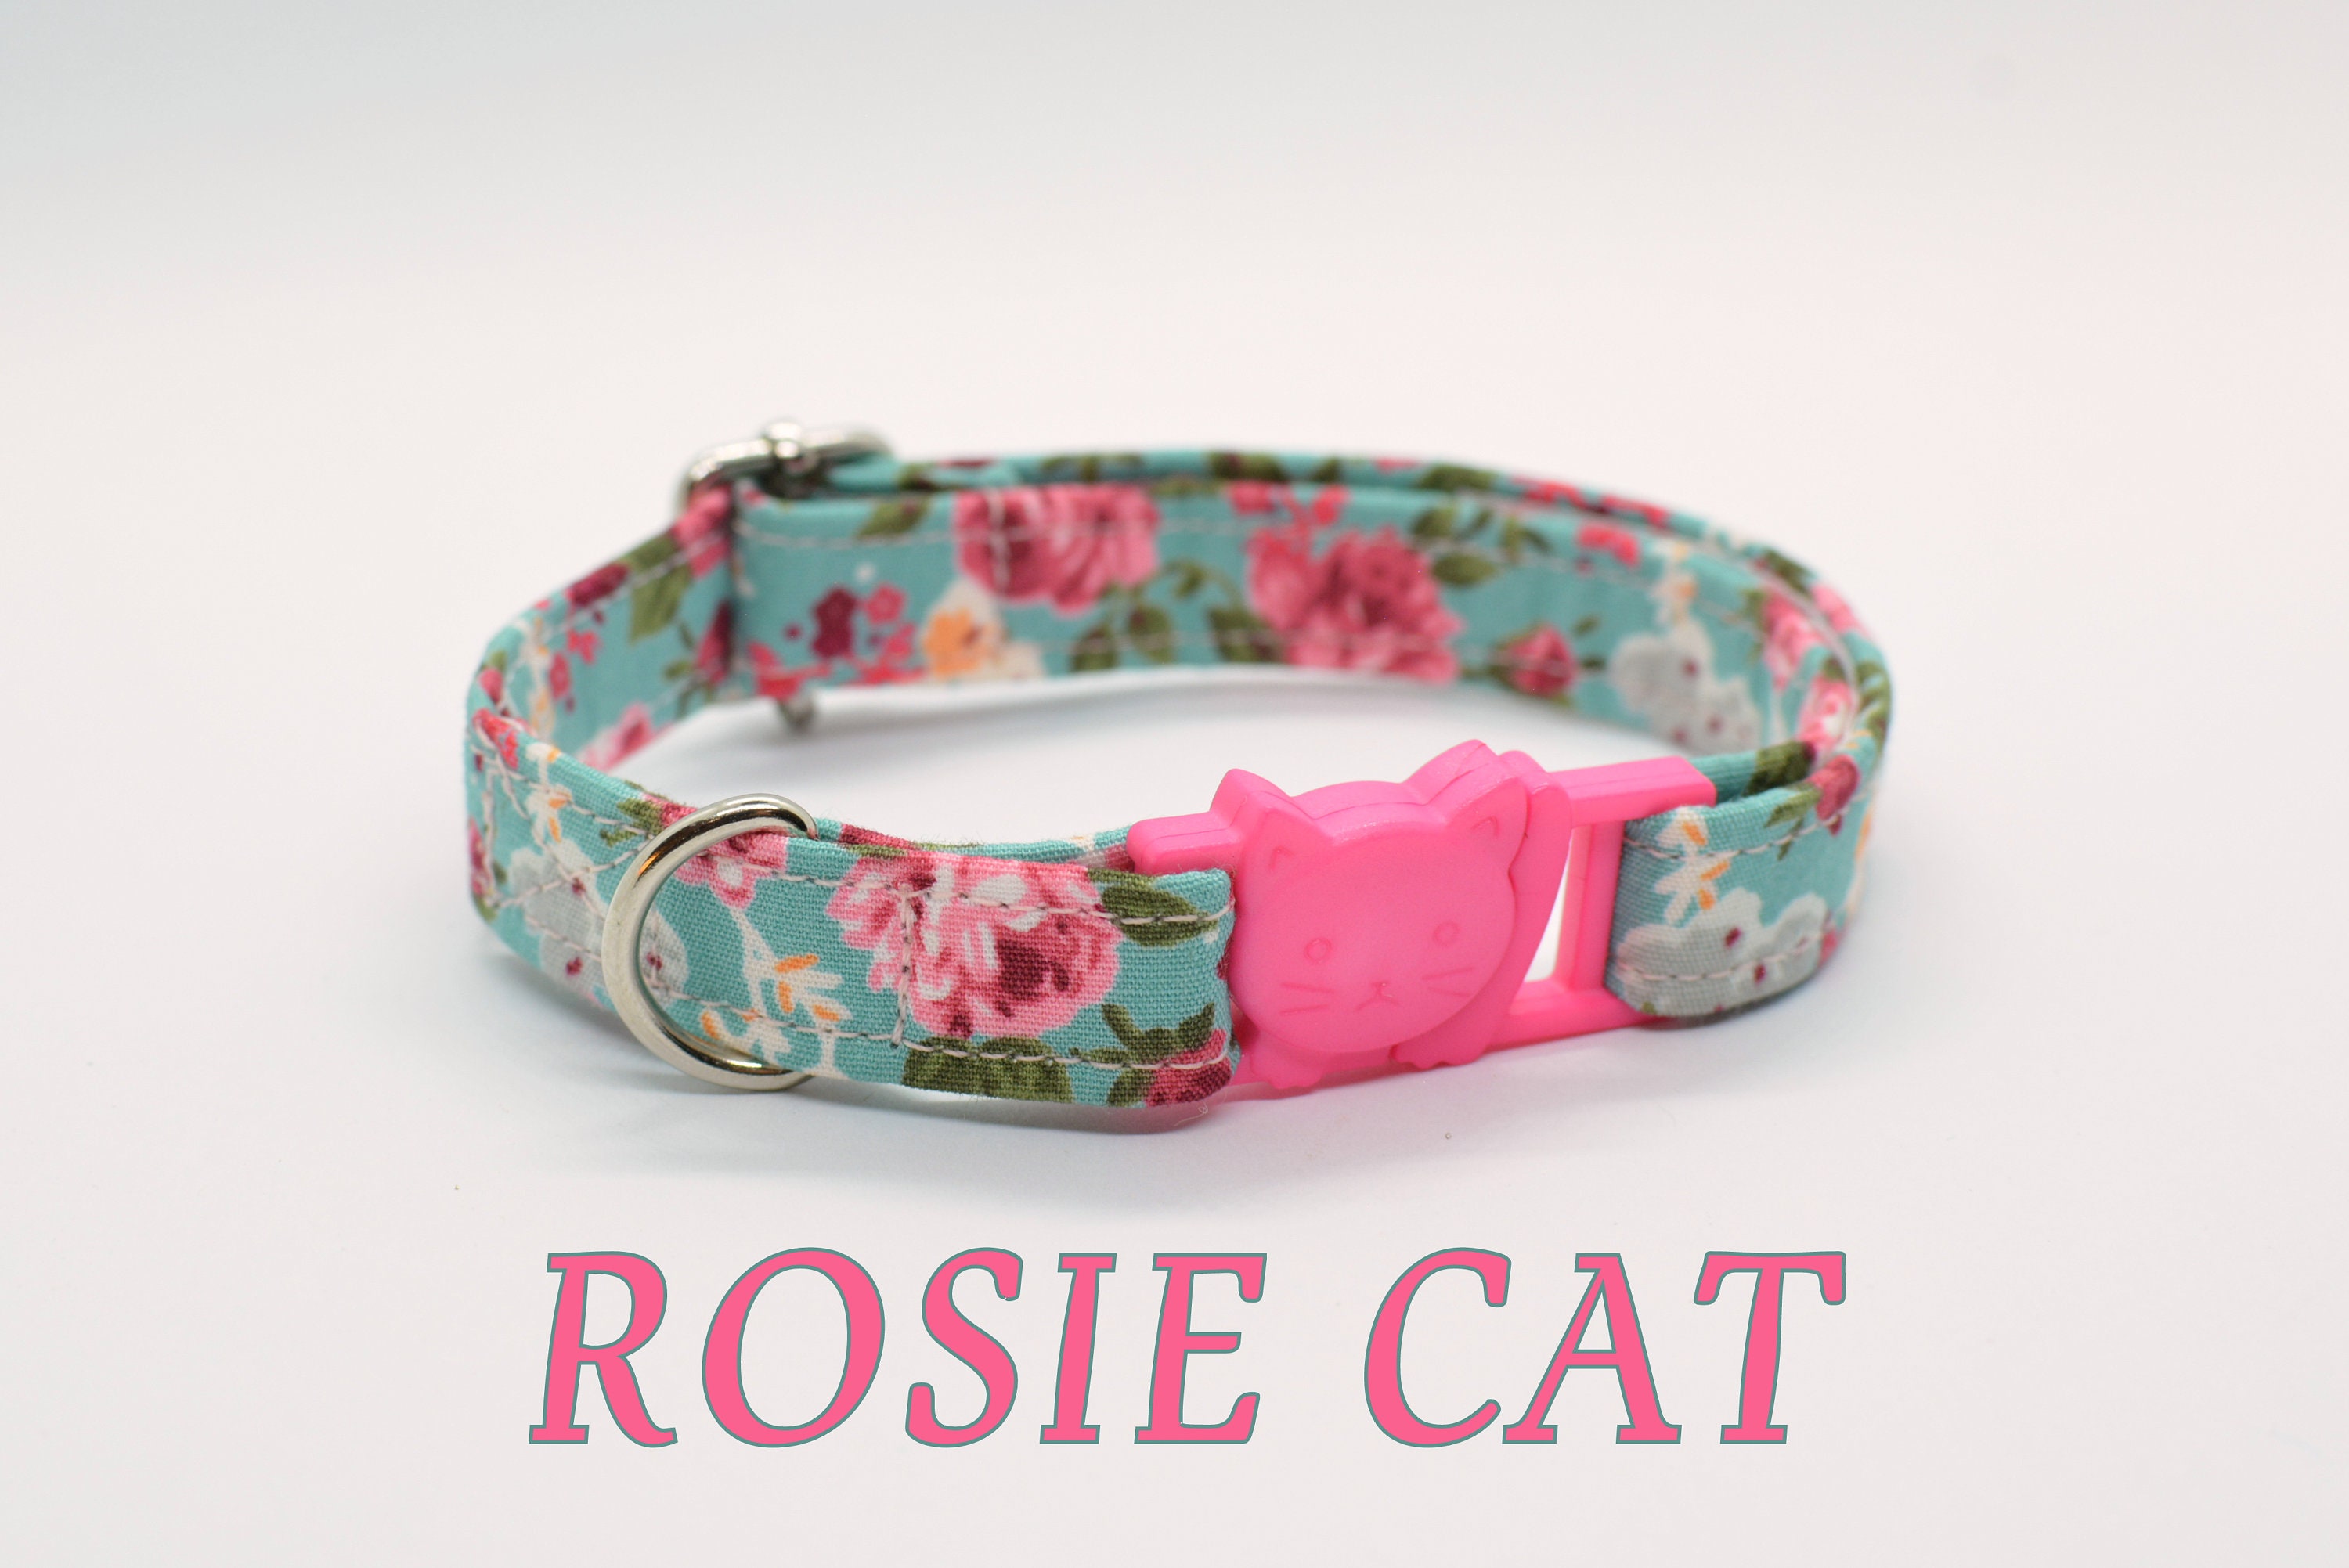 Cat collar 'Rosie Cat' / floral cat collar, breakaway cat collar,mint